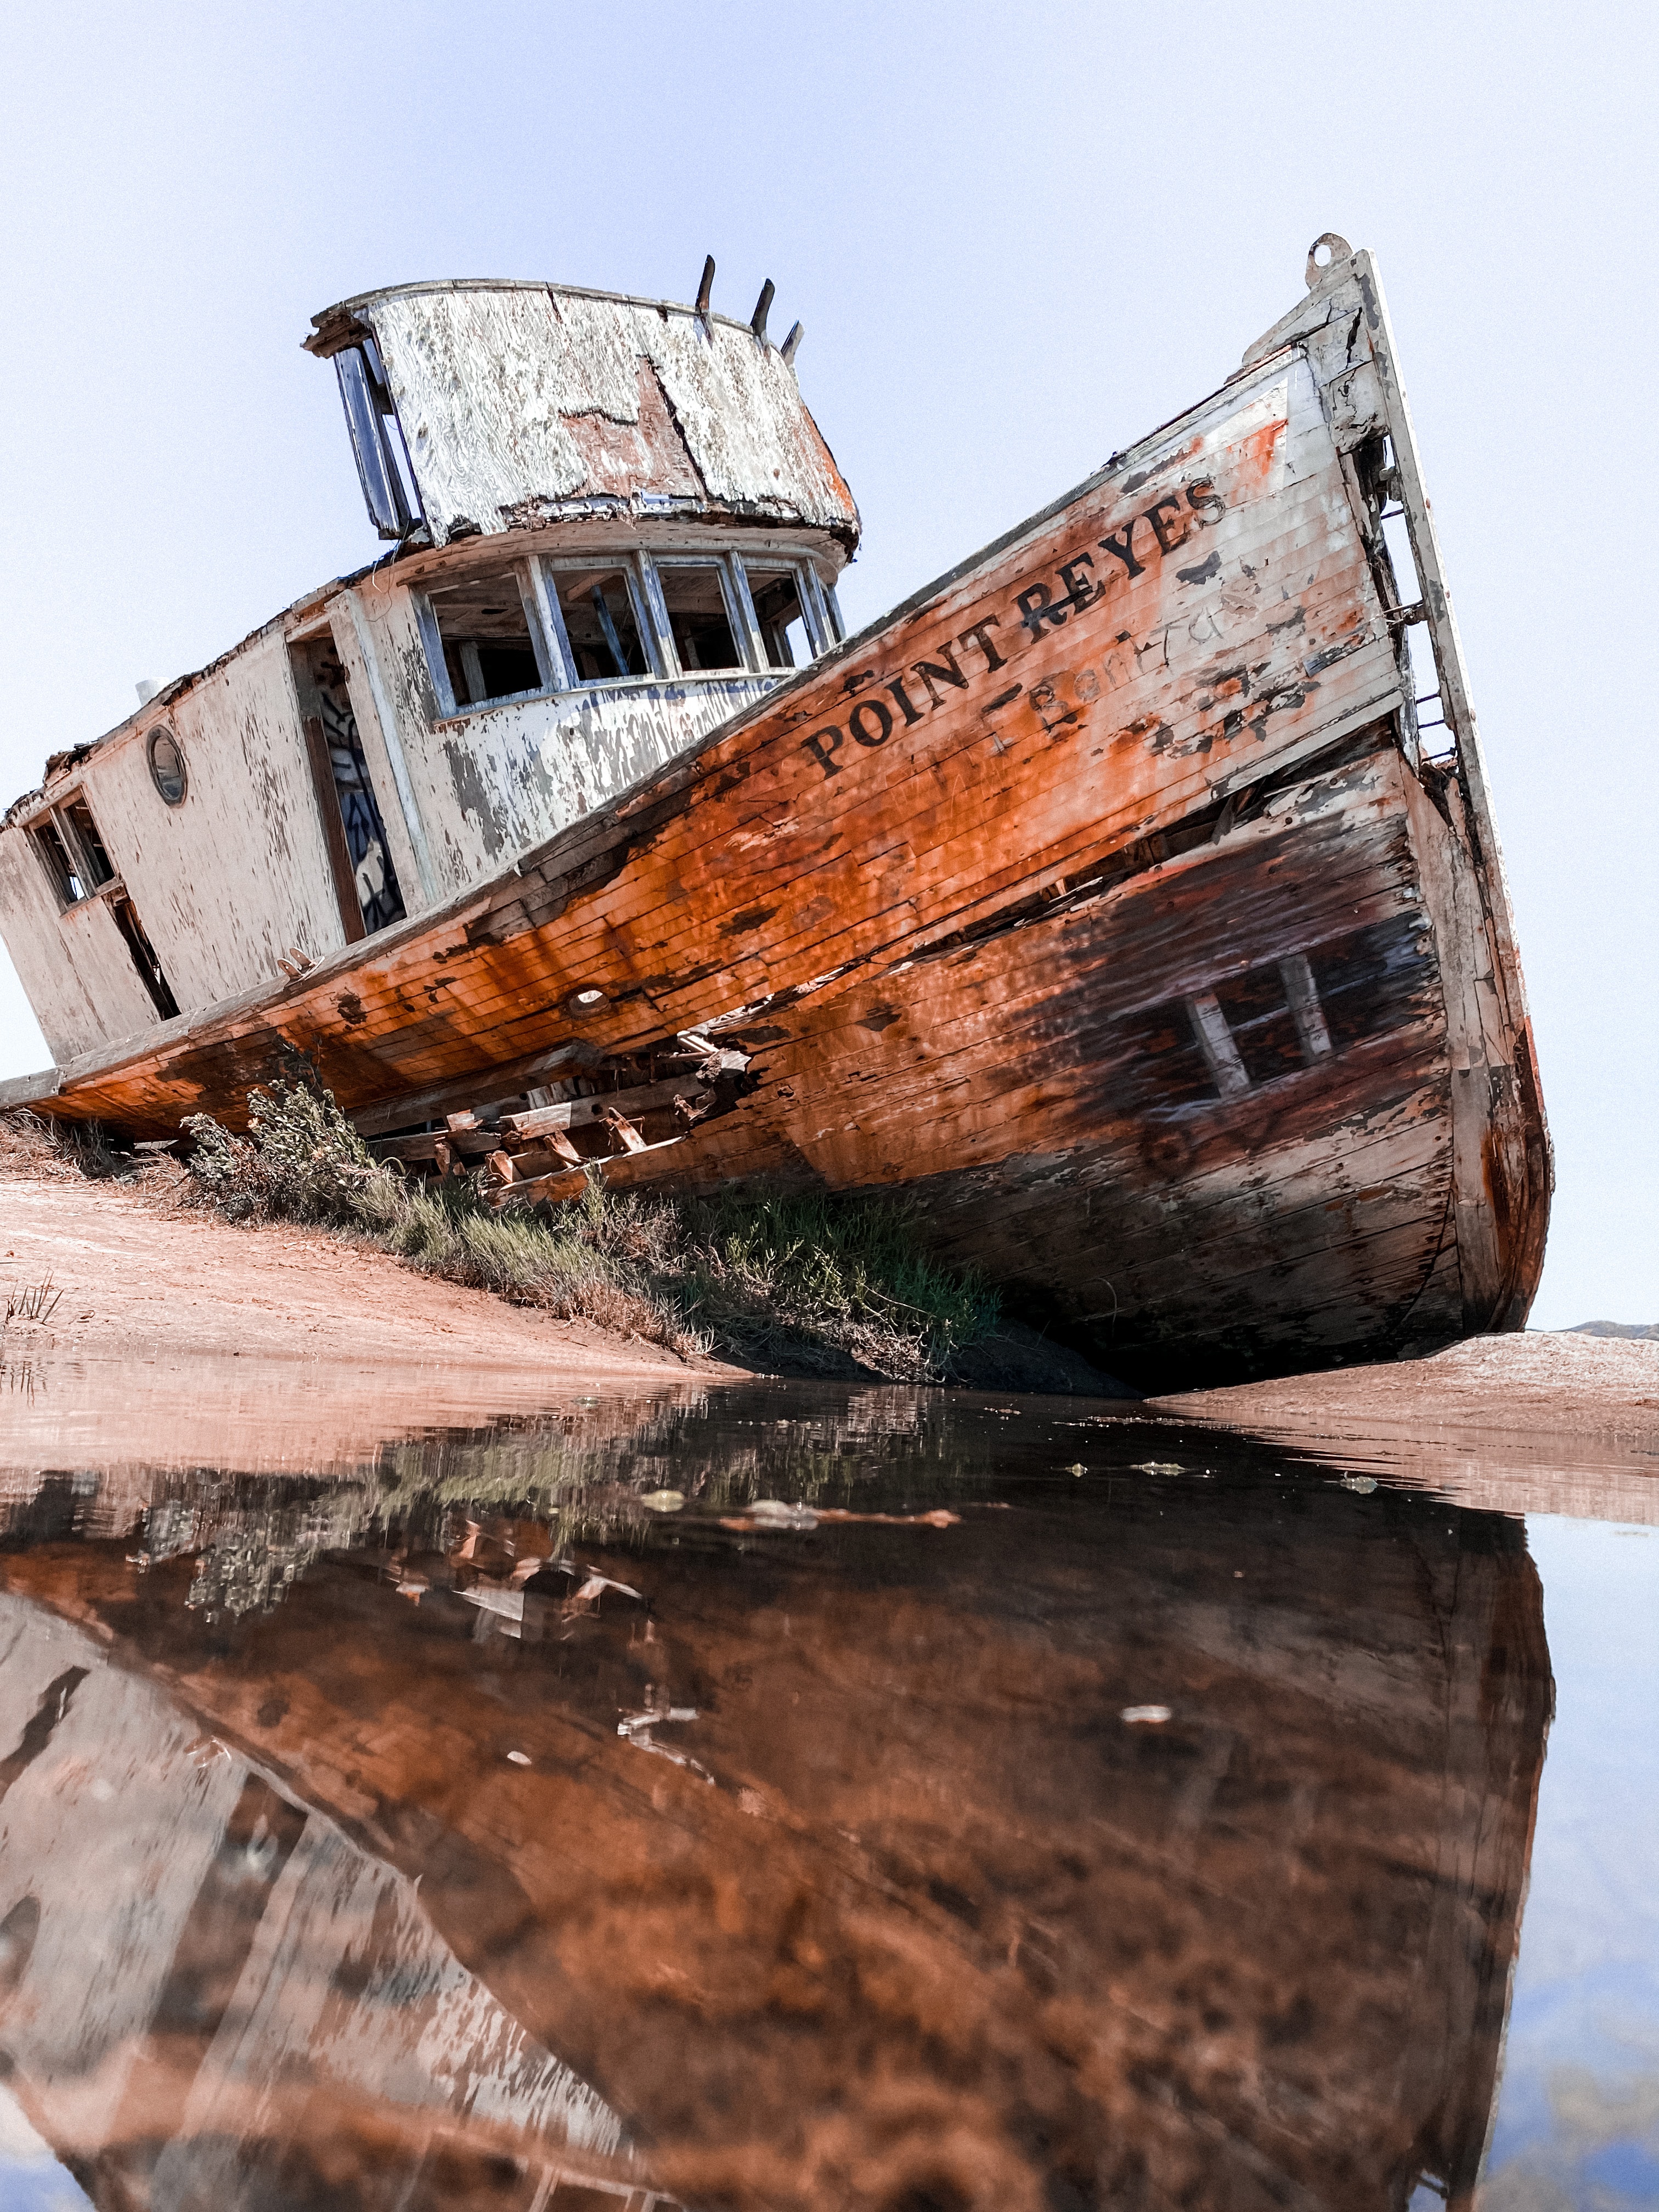 A sinked ship. Photo by Emma Watson on Unsplash